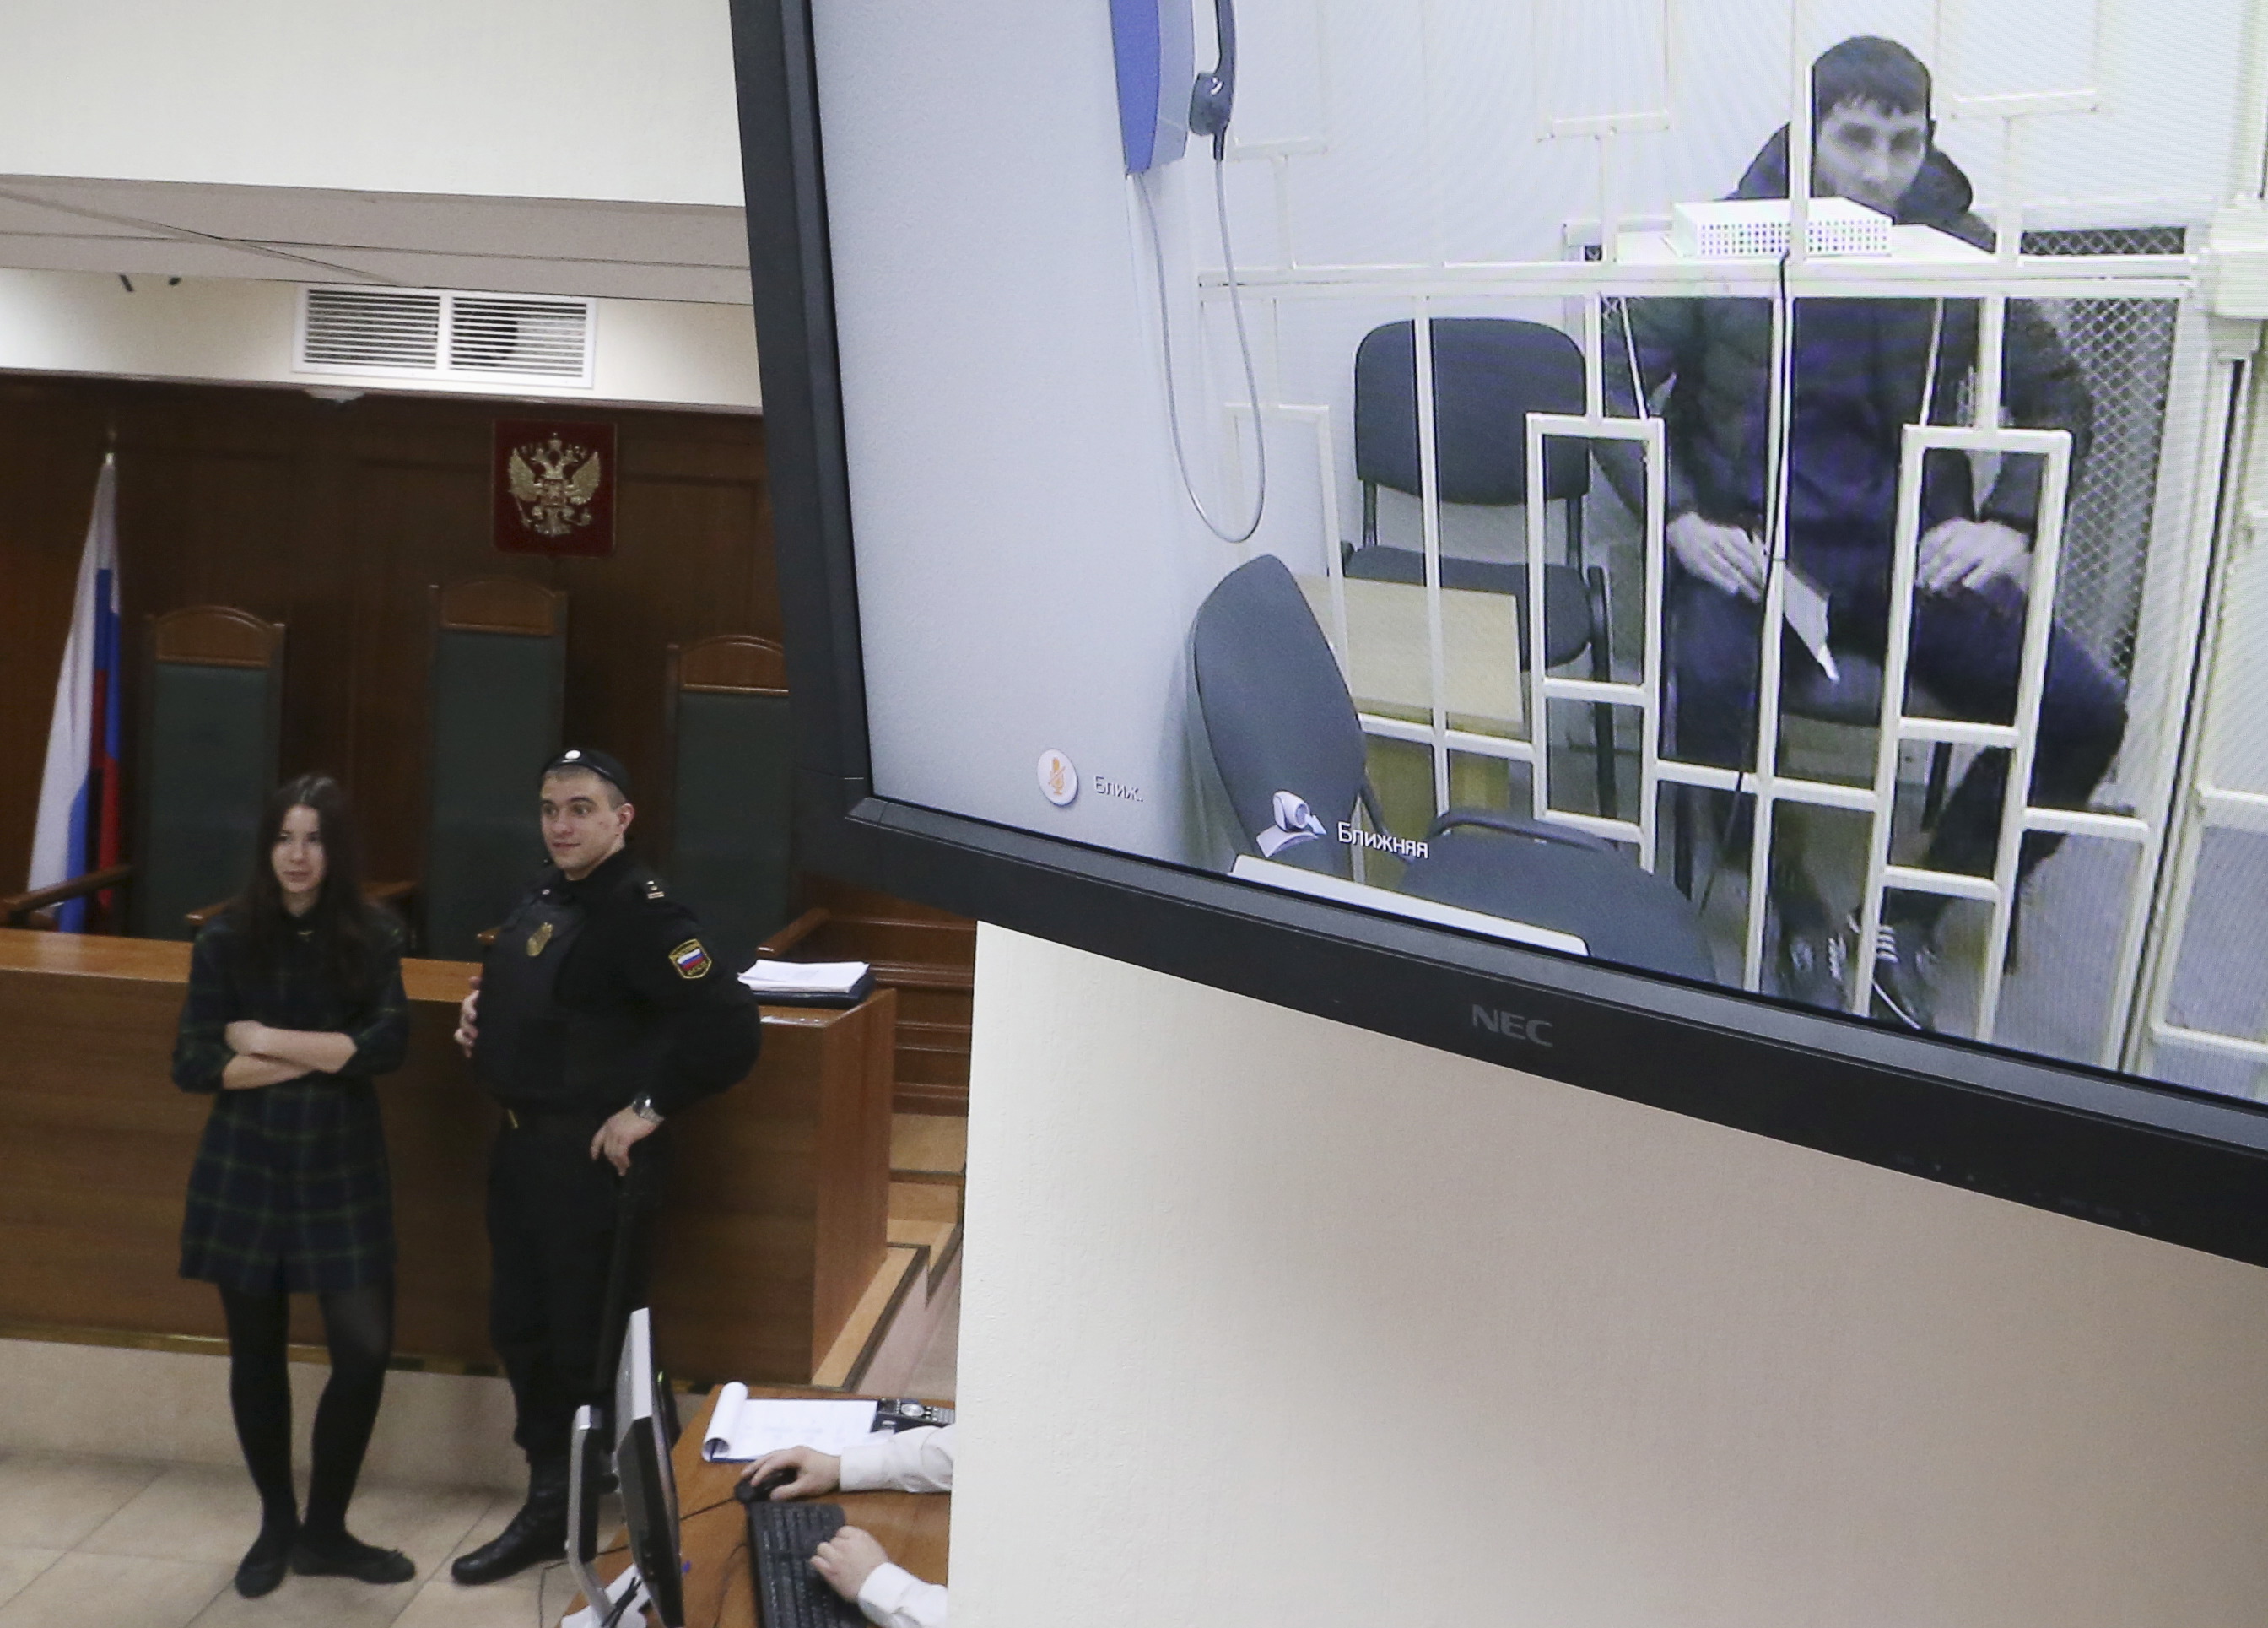 Заур Дадаев по видеосвязи из СИЗО во время рассмотрения в Мосгорсуде&nbsp;апелляционной жалобы на арест, 1 апреля 2015 года
